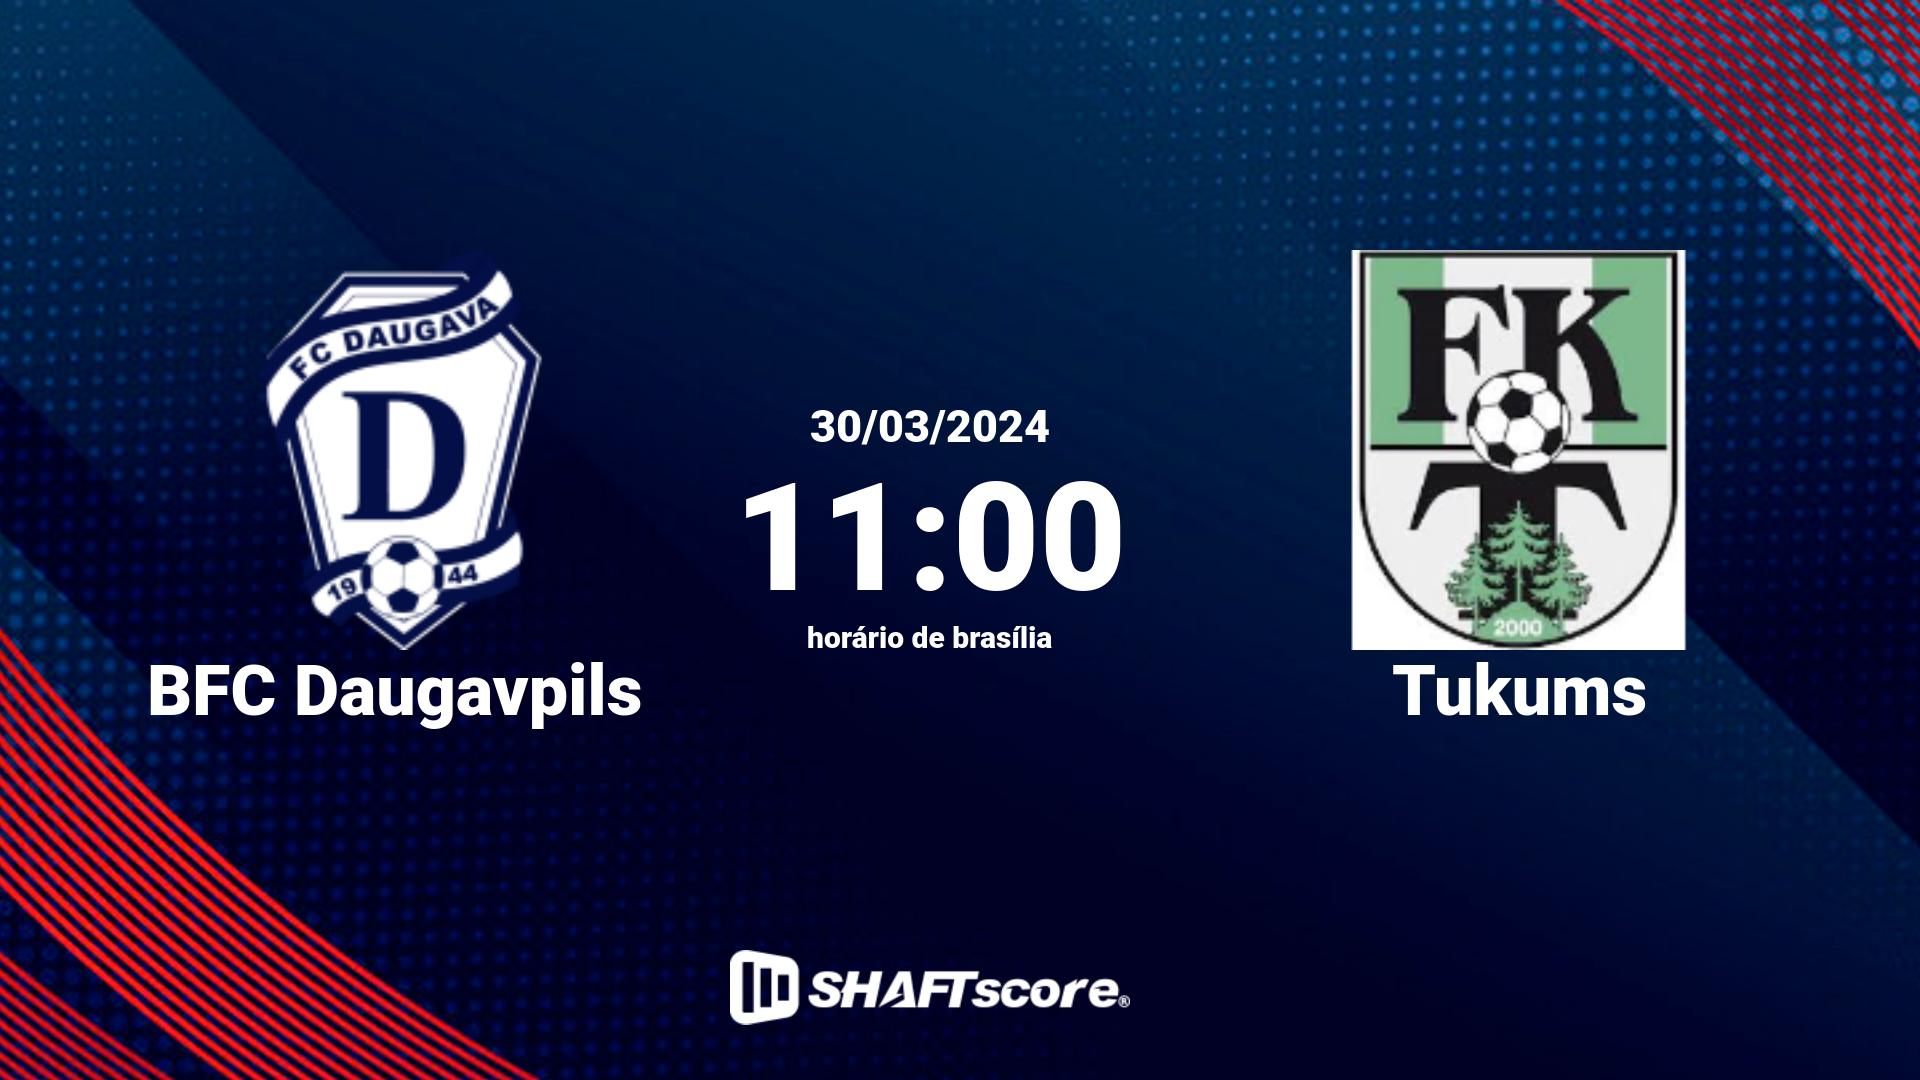 Estatísticas do jogo BFC Daugavpils vs Tukums 30.03 11:00